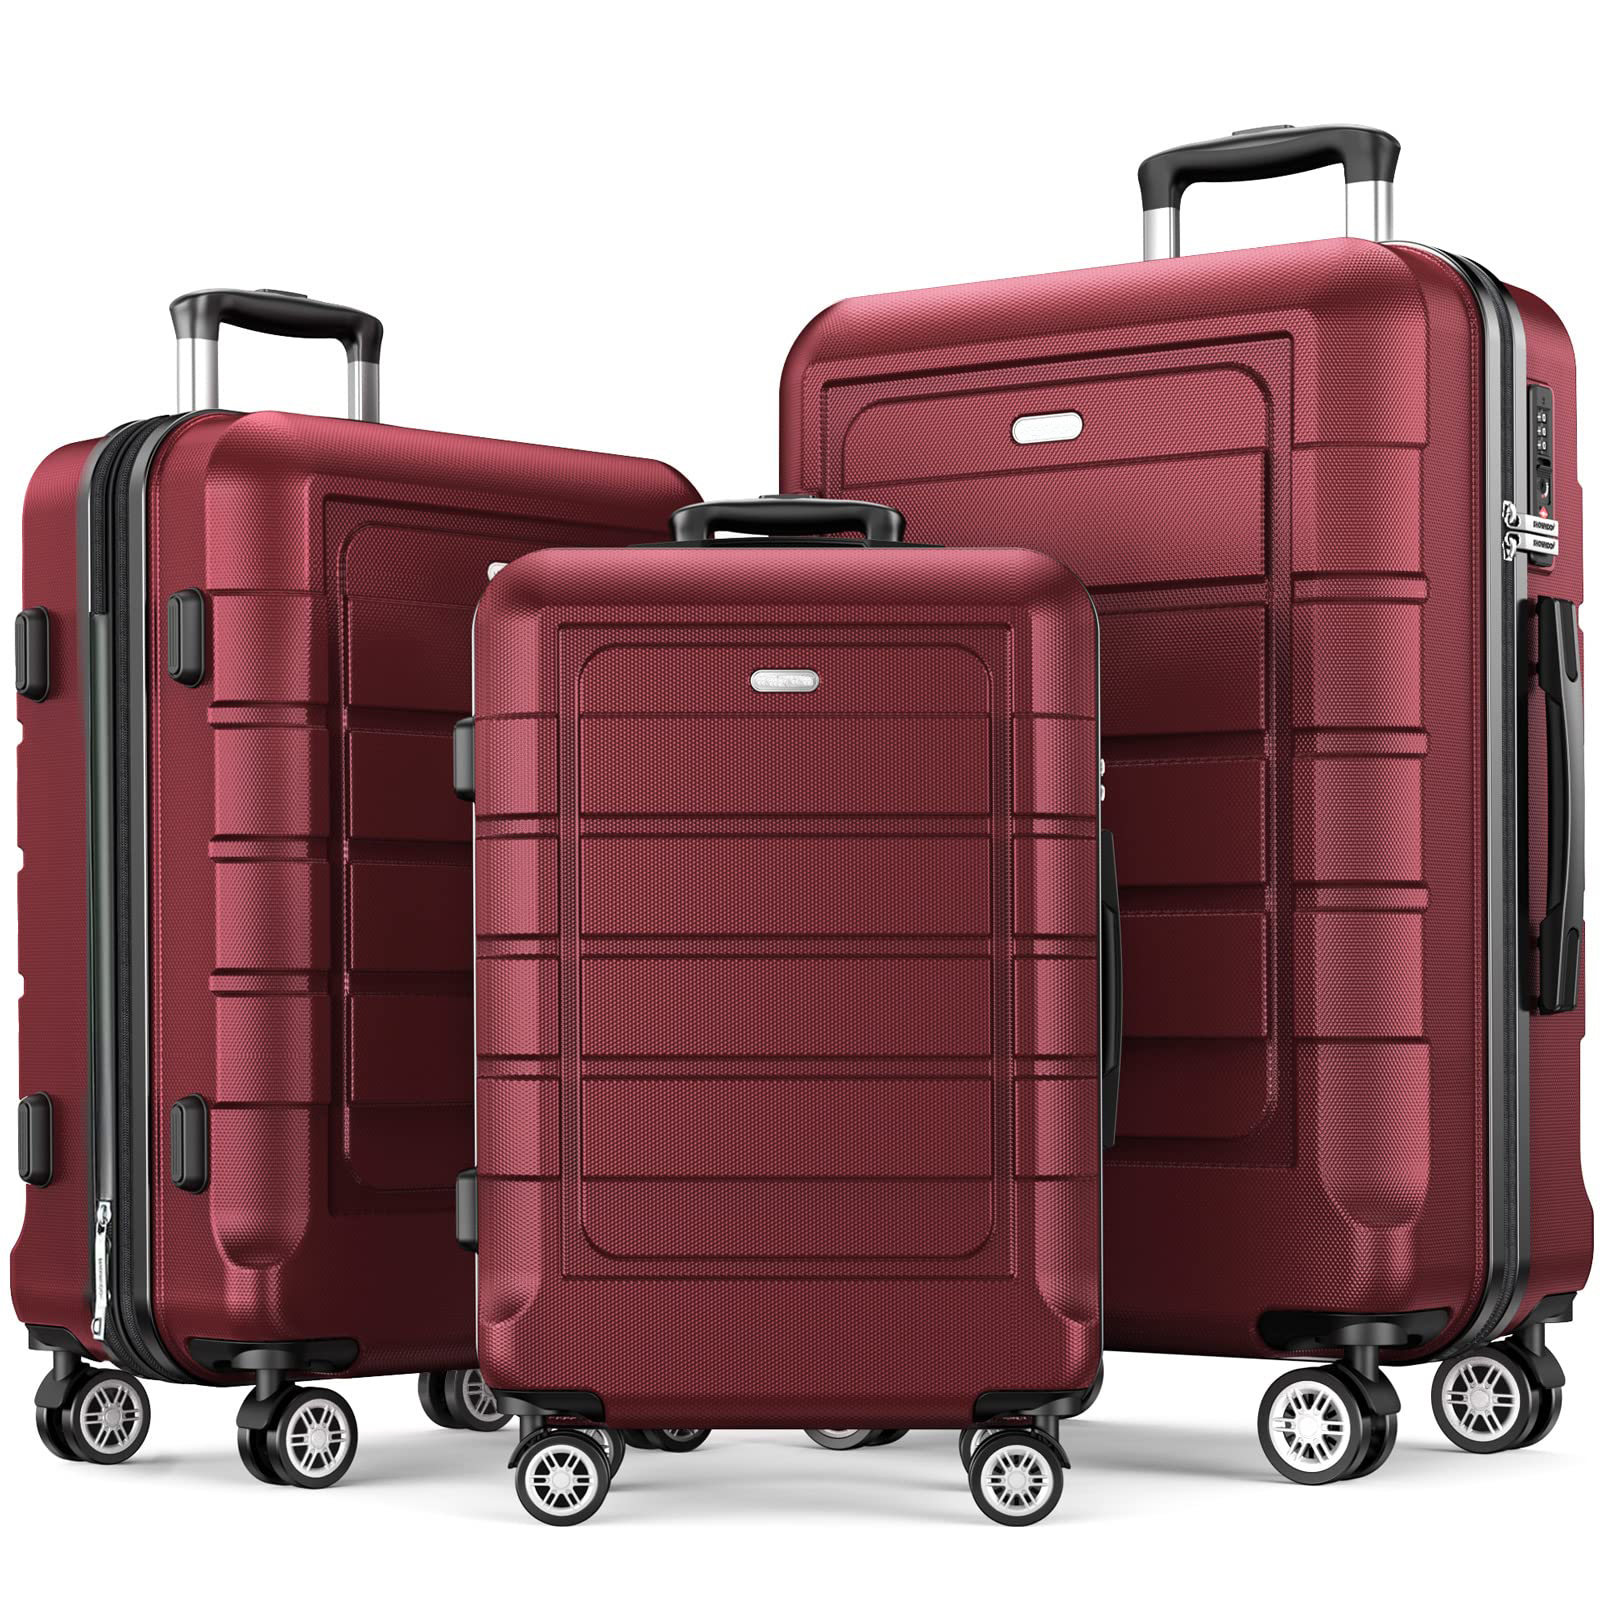 赤い ABS スーツケースは耐久性があり、車輪付きのローリングスーツケースです。